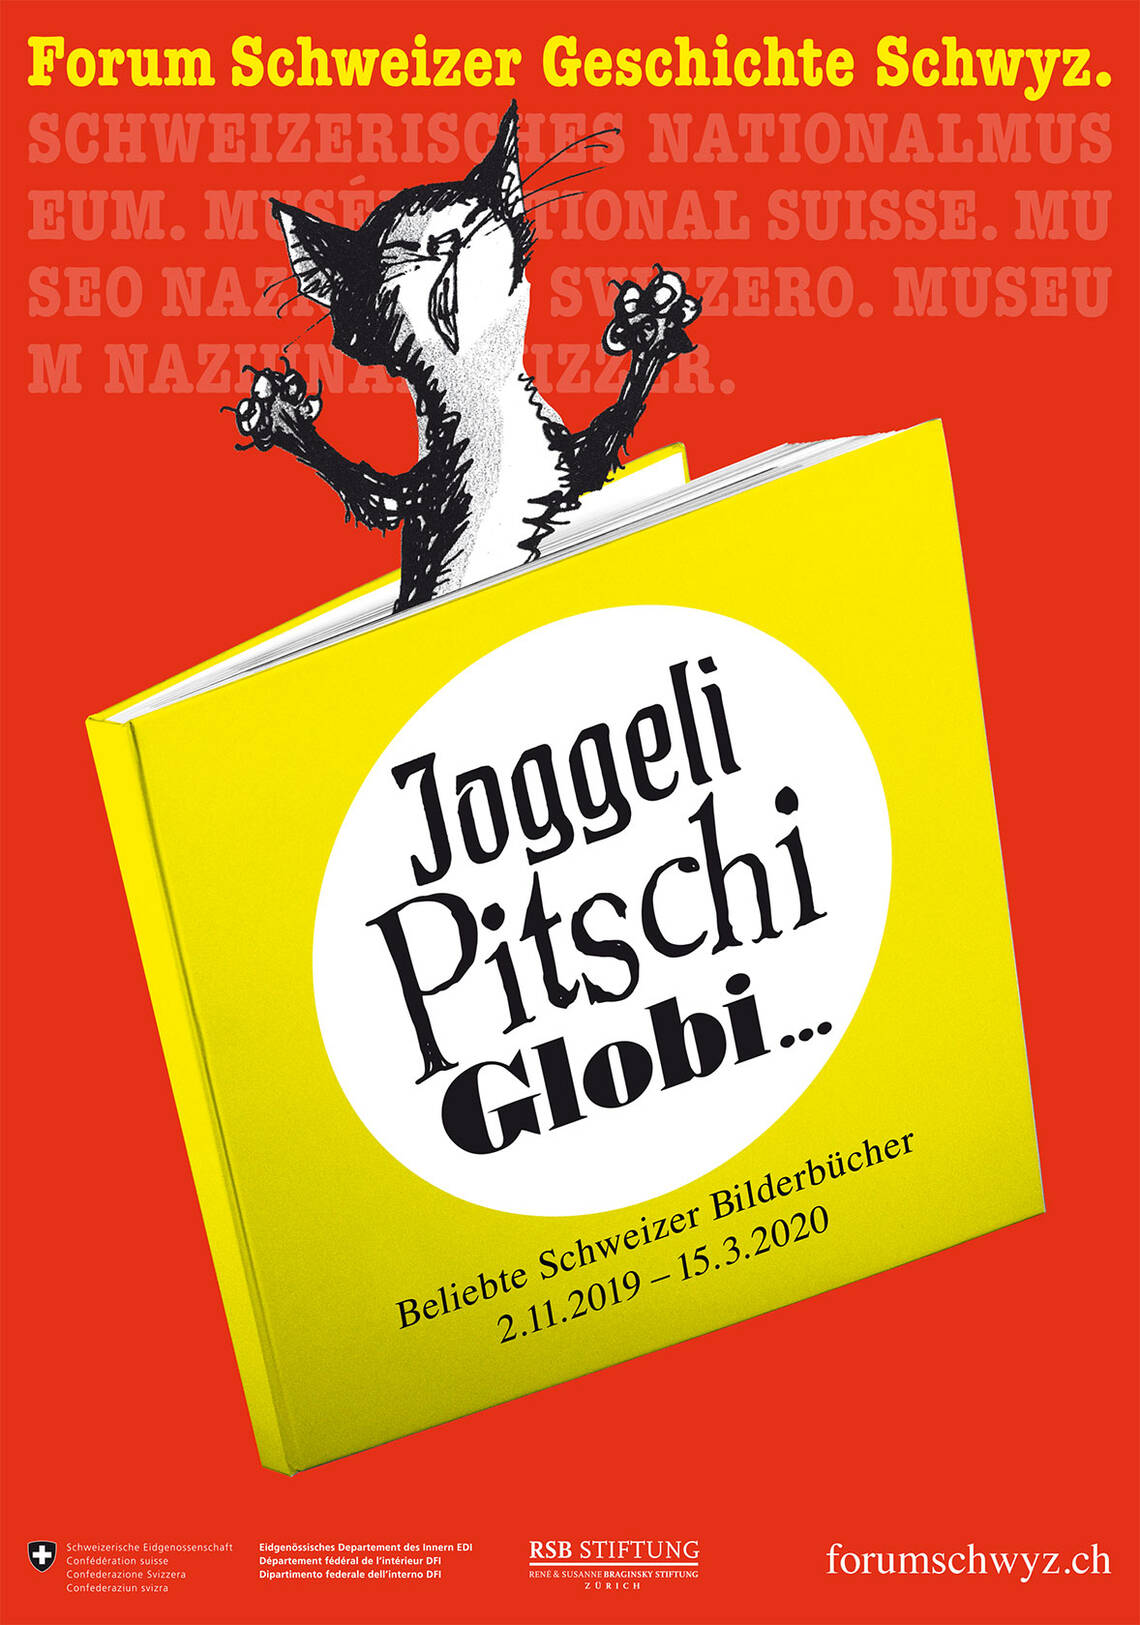 Keyvisual de l'exposition "Joggeli, Pitschi, Globi... livres suisses pour enfants populaires" il montre un chat coincé dans un livre sous forme de dessin